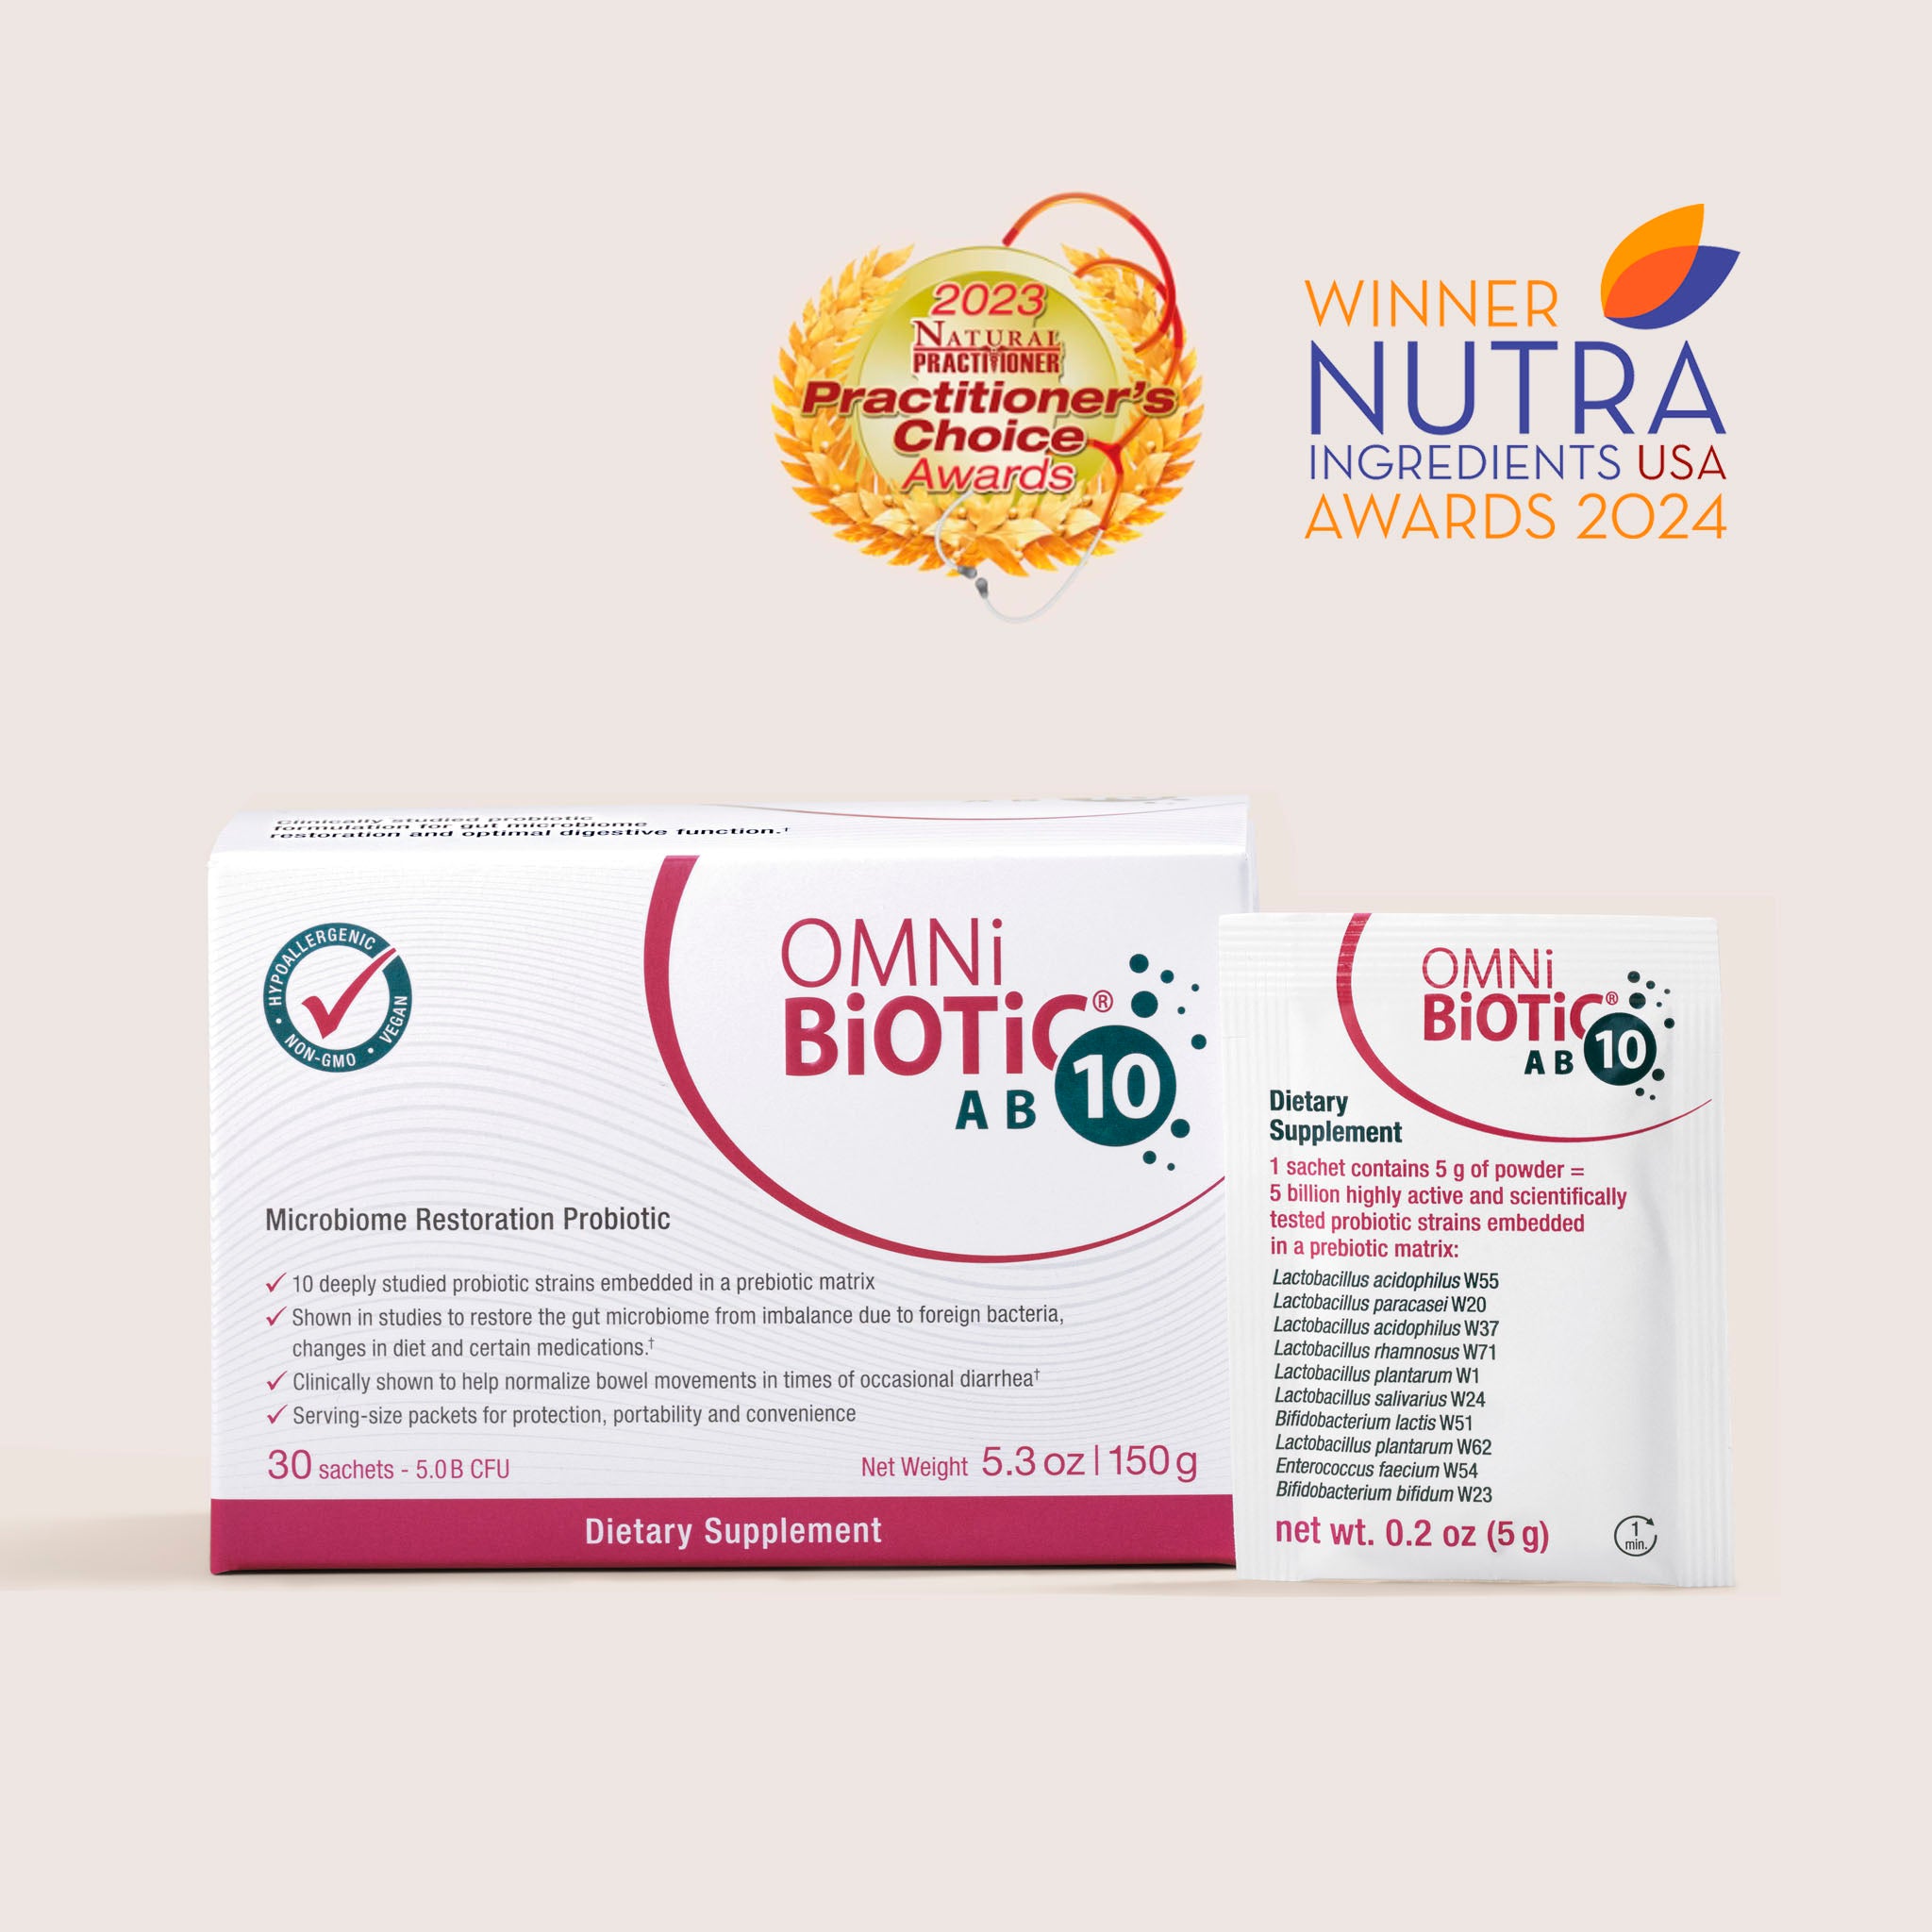 Omni-Biotic AB 10 Probiotic